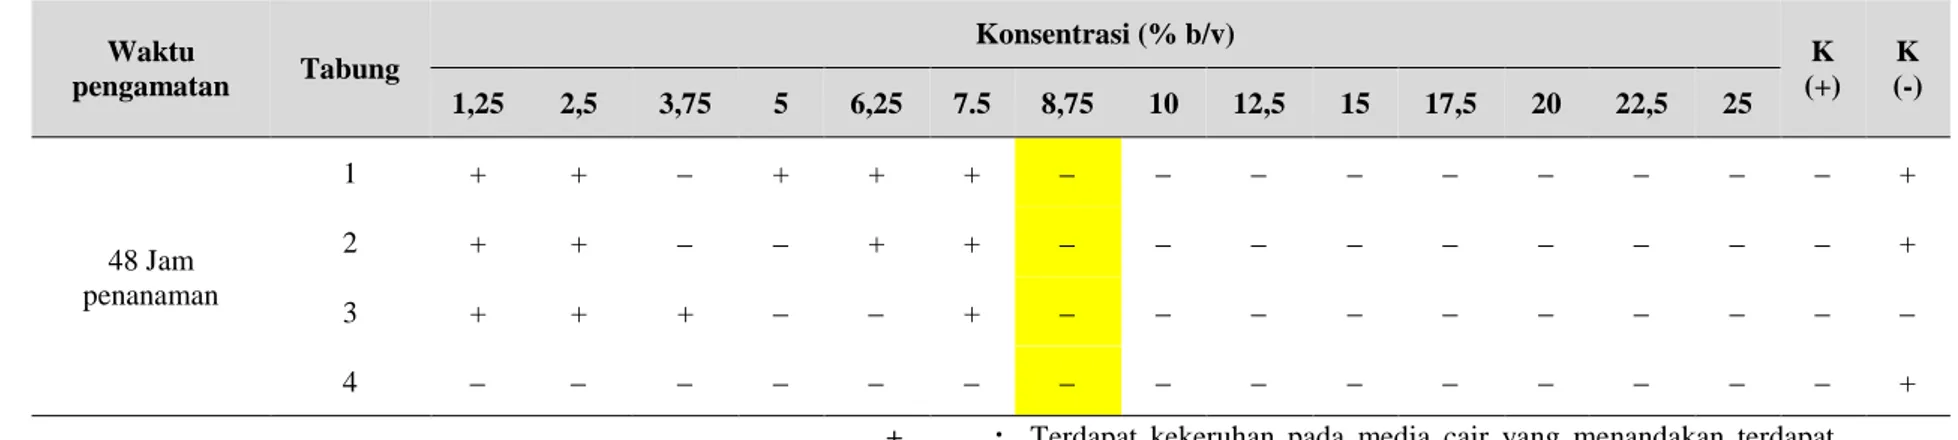 Tabel 2  : Hasil Pengujian MKC (Minimum Inhibitory Concentration)  Ekstrak Daun Kecombrang (Etlingera elatior) Terhadap pertumbuhan Candida albicans